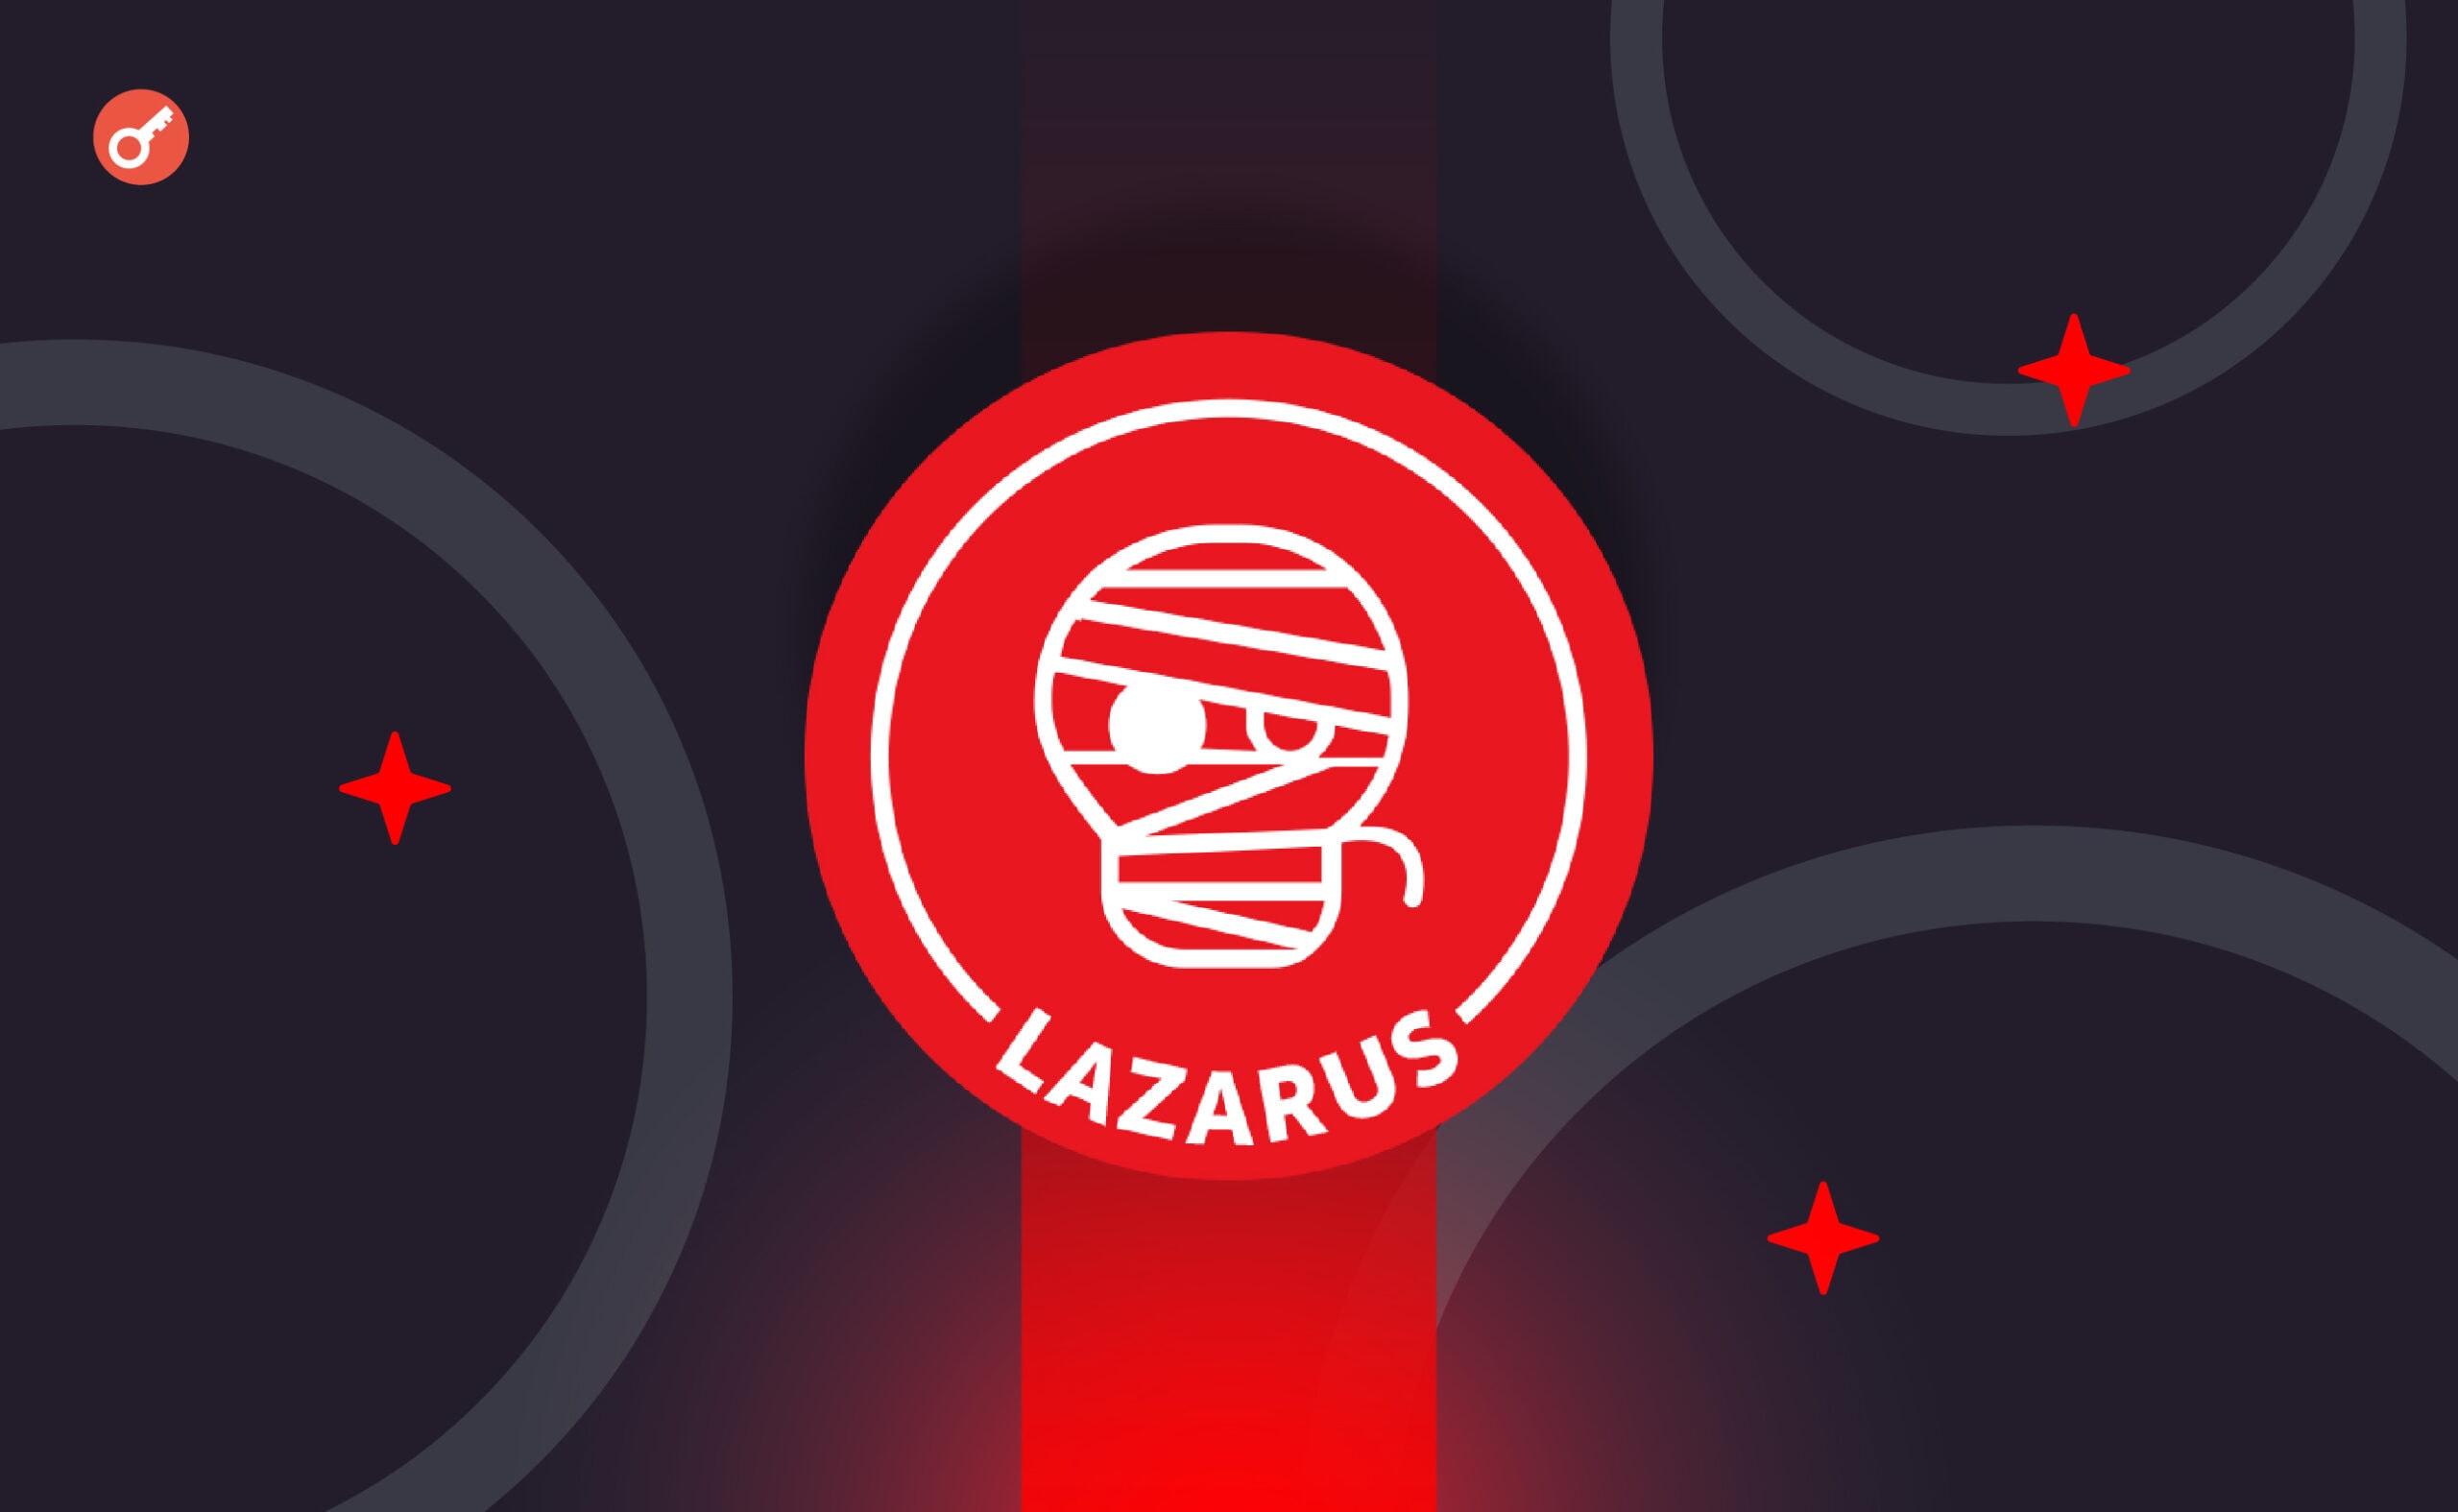 SlowMist: хакеры из Lazarus Group провели серию атак на компании криптоиндустрии. Заглавный коллаж новости.